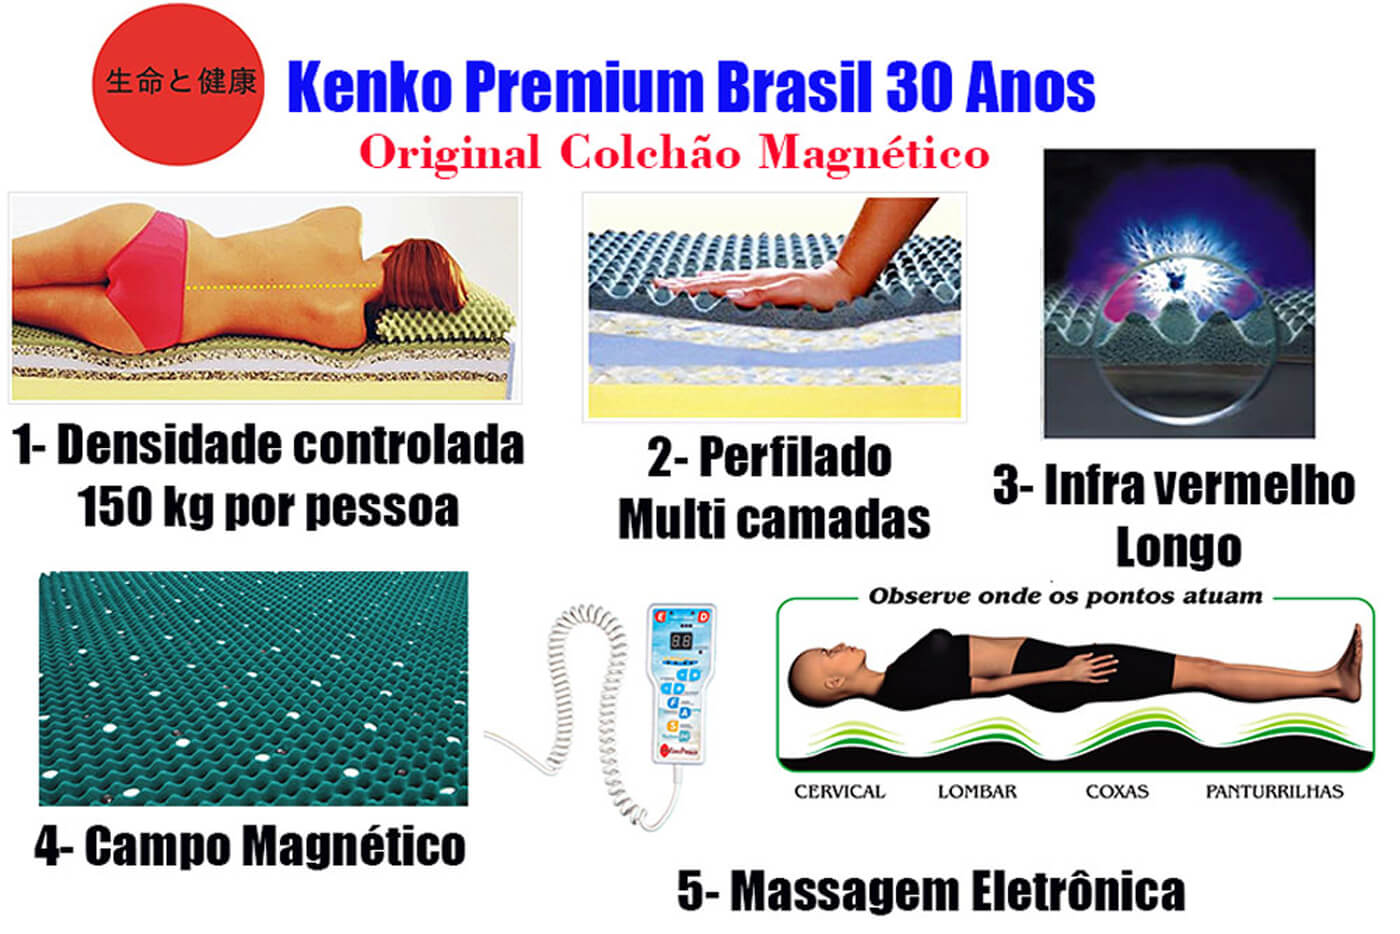 Colchão Magnético Kenko Premium Solteiro 0,88x1,88x27cm Plus C/ Massagem Eletrônica Energia Bioquãntica + Cromoterapia - Kenko Premium Colchões